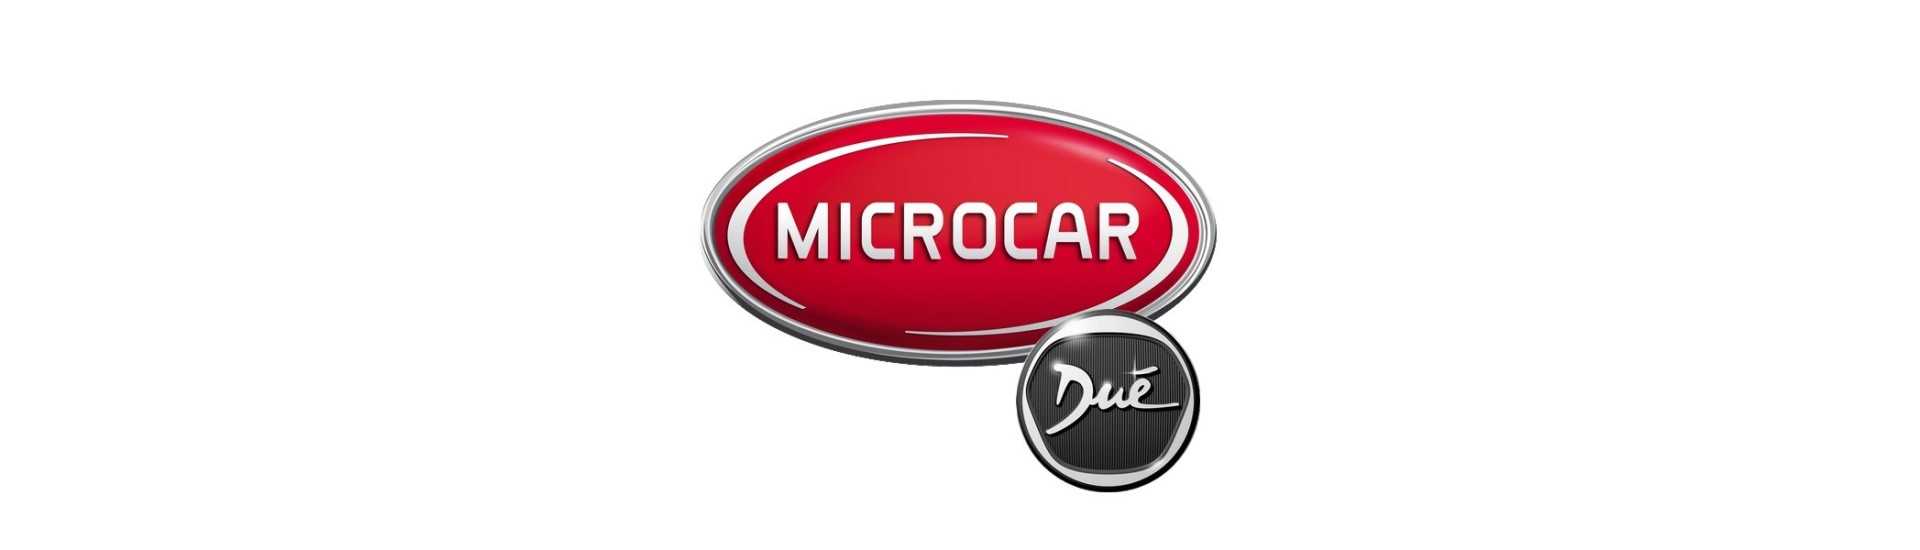 Feu de jour au meilleur prix pour voiture sans permis Microcar Dué